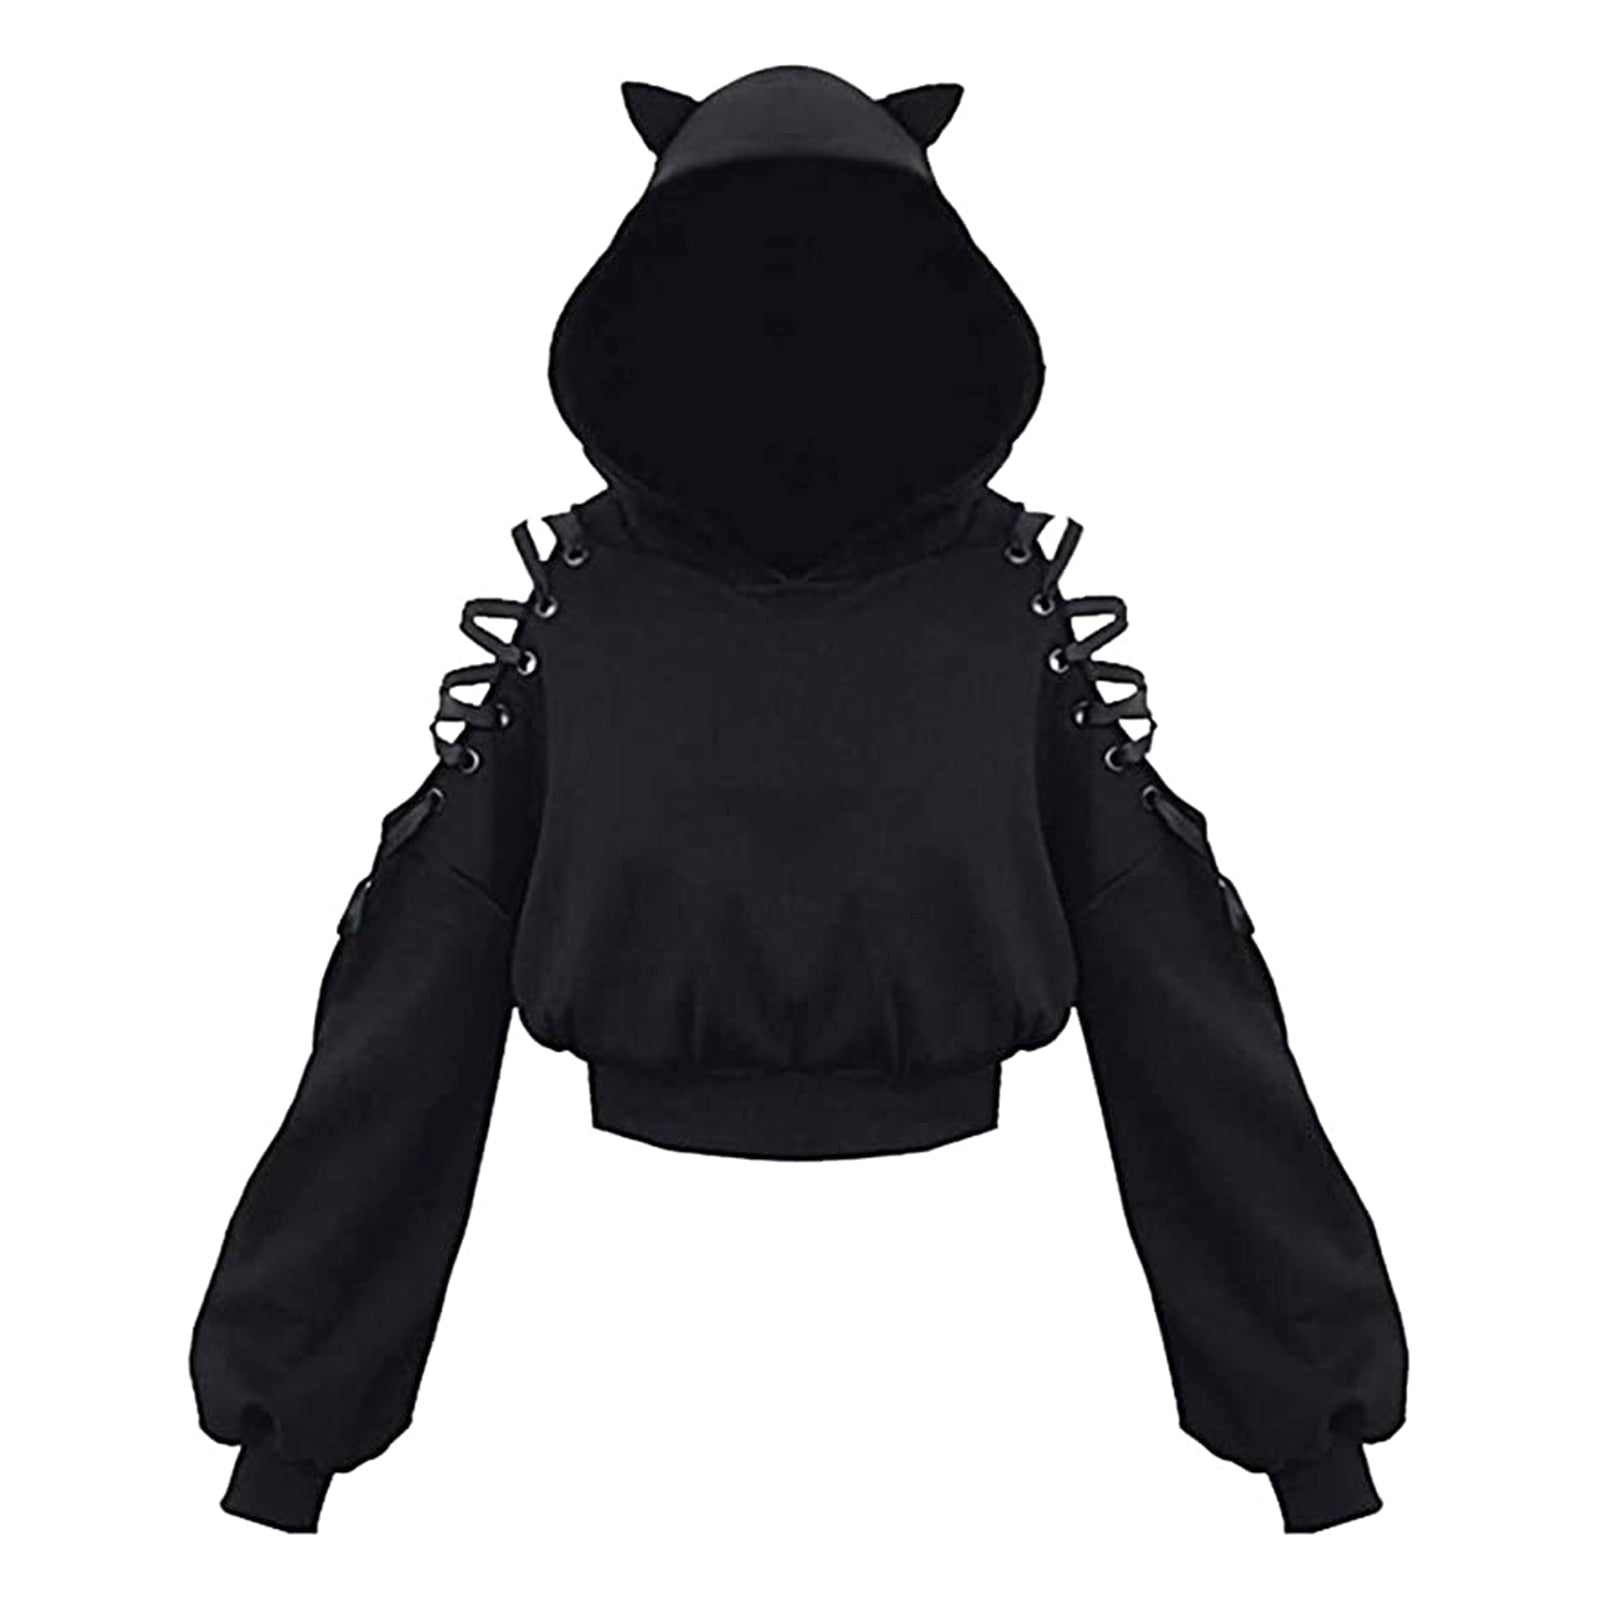 Black Cat hoodie with Ears - Full Black / S